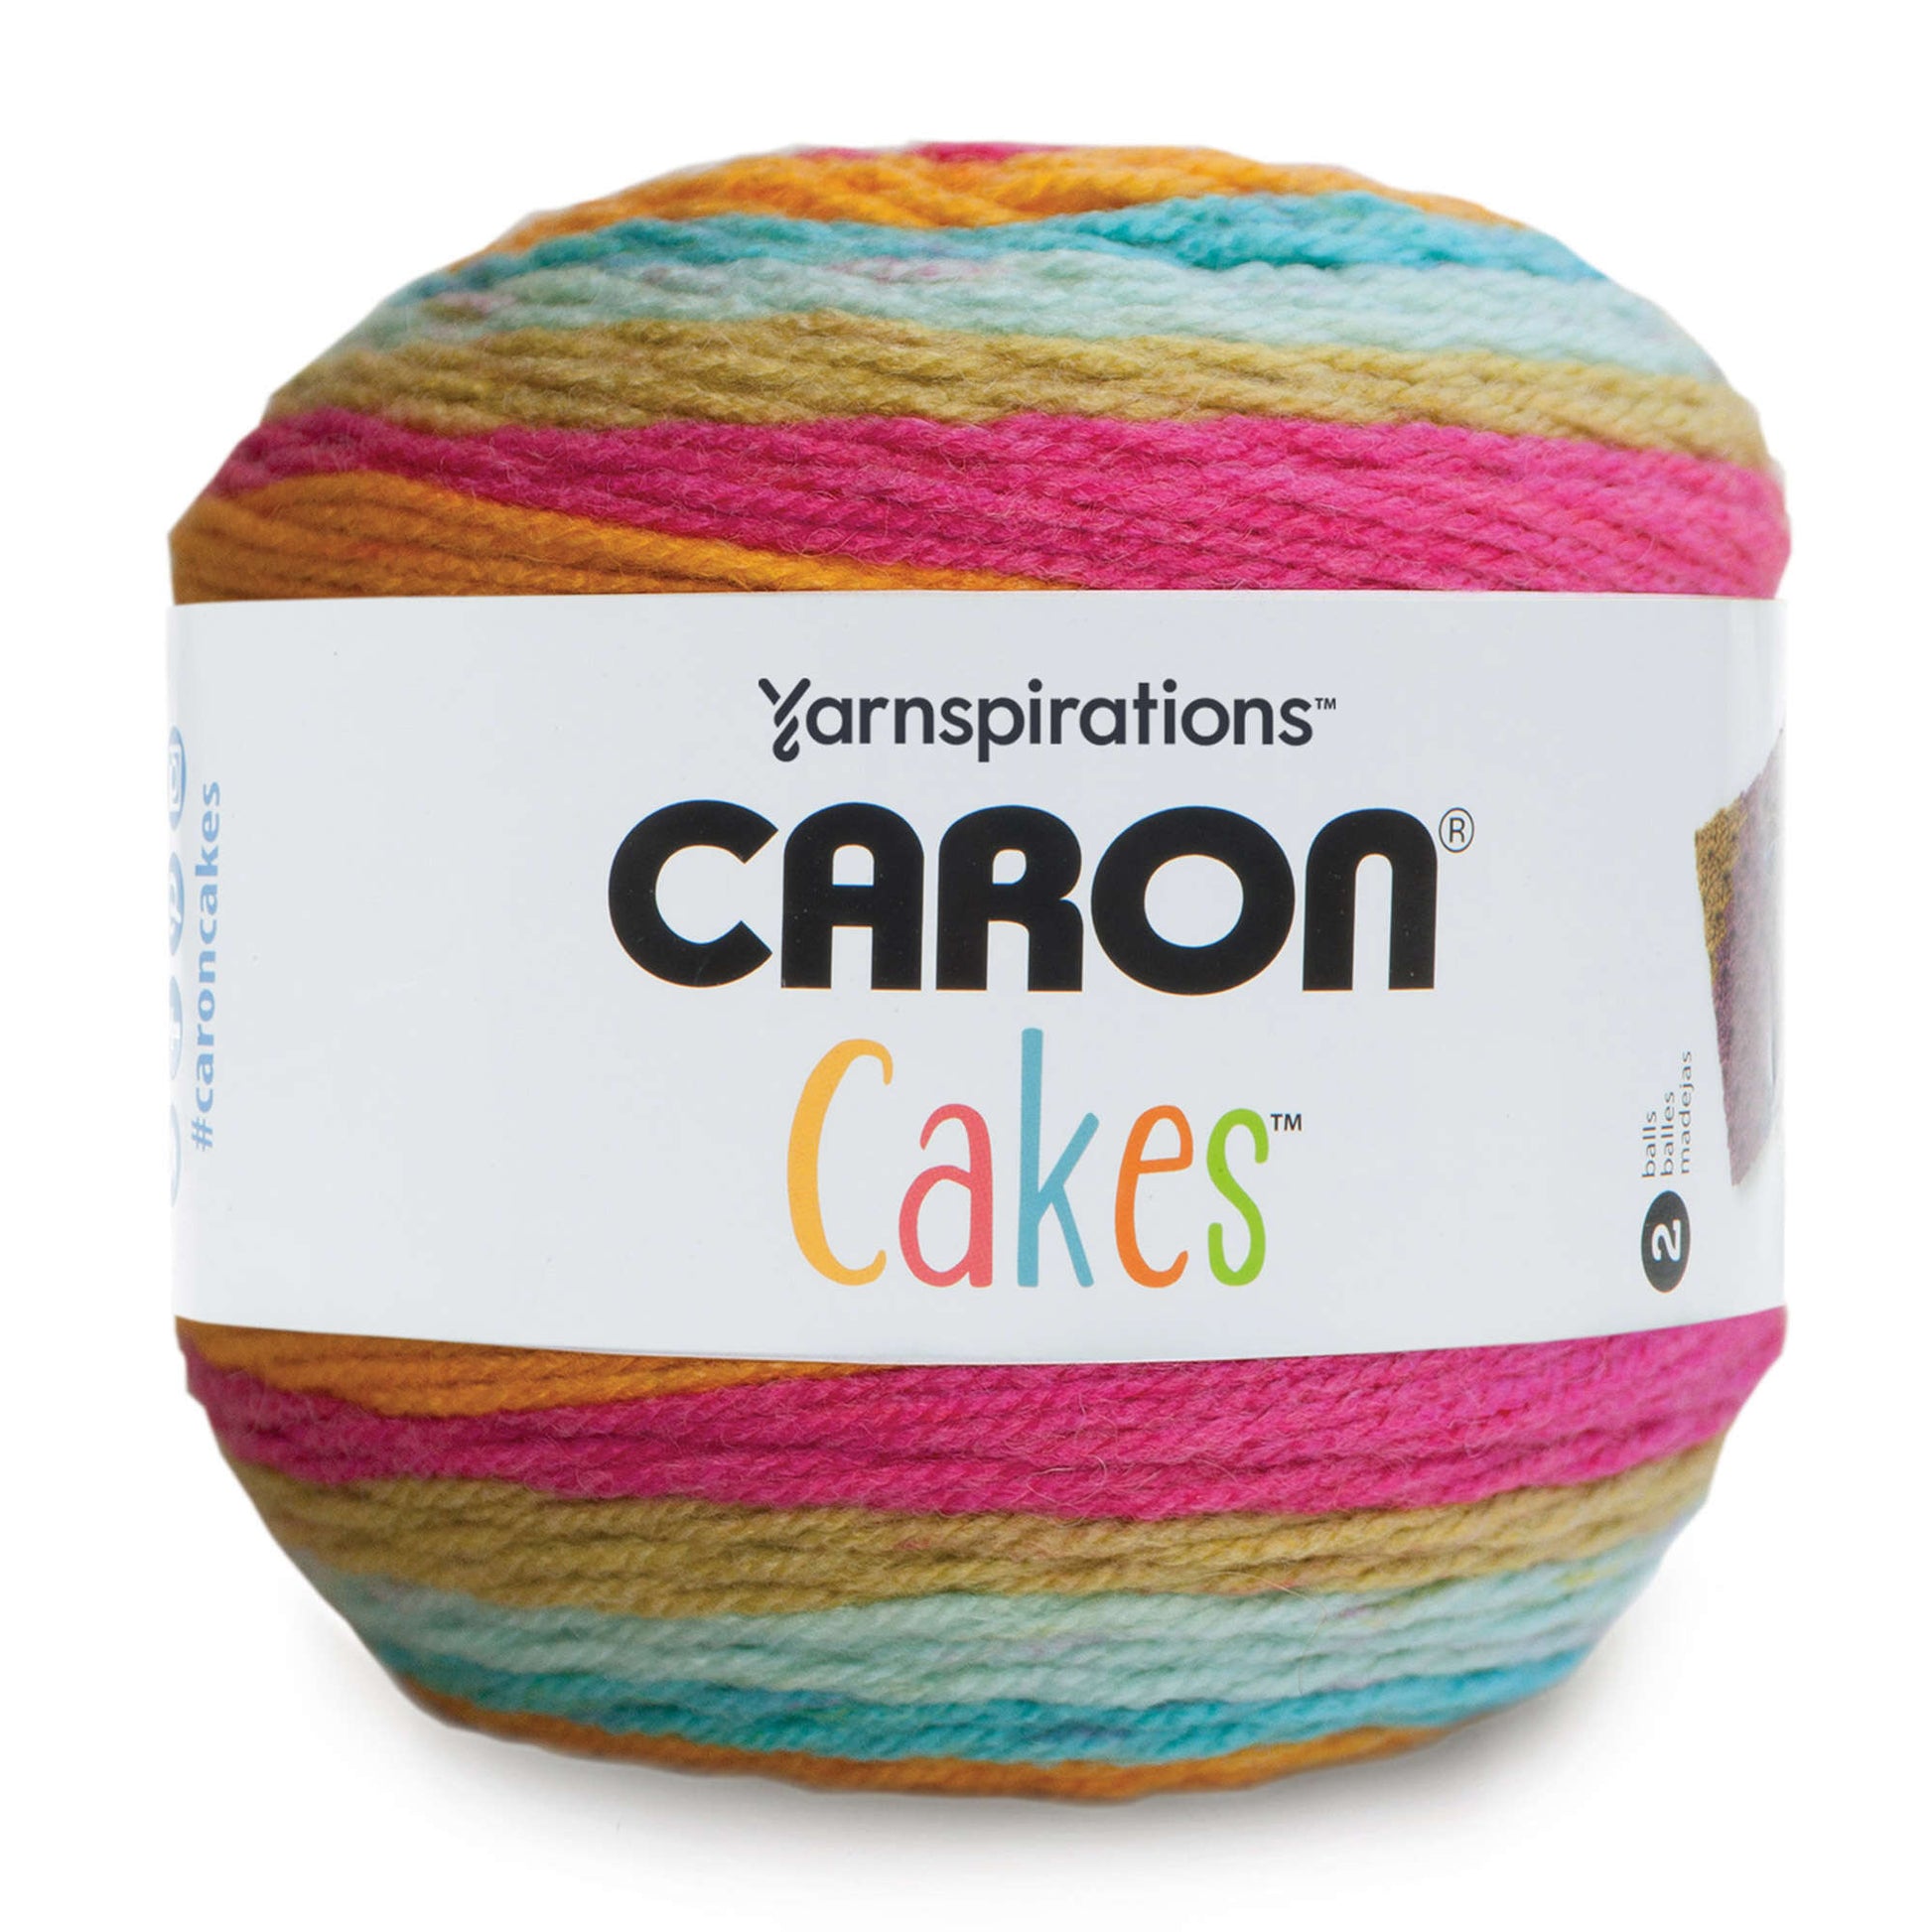 Caron Cakes Yarn